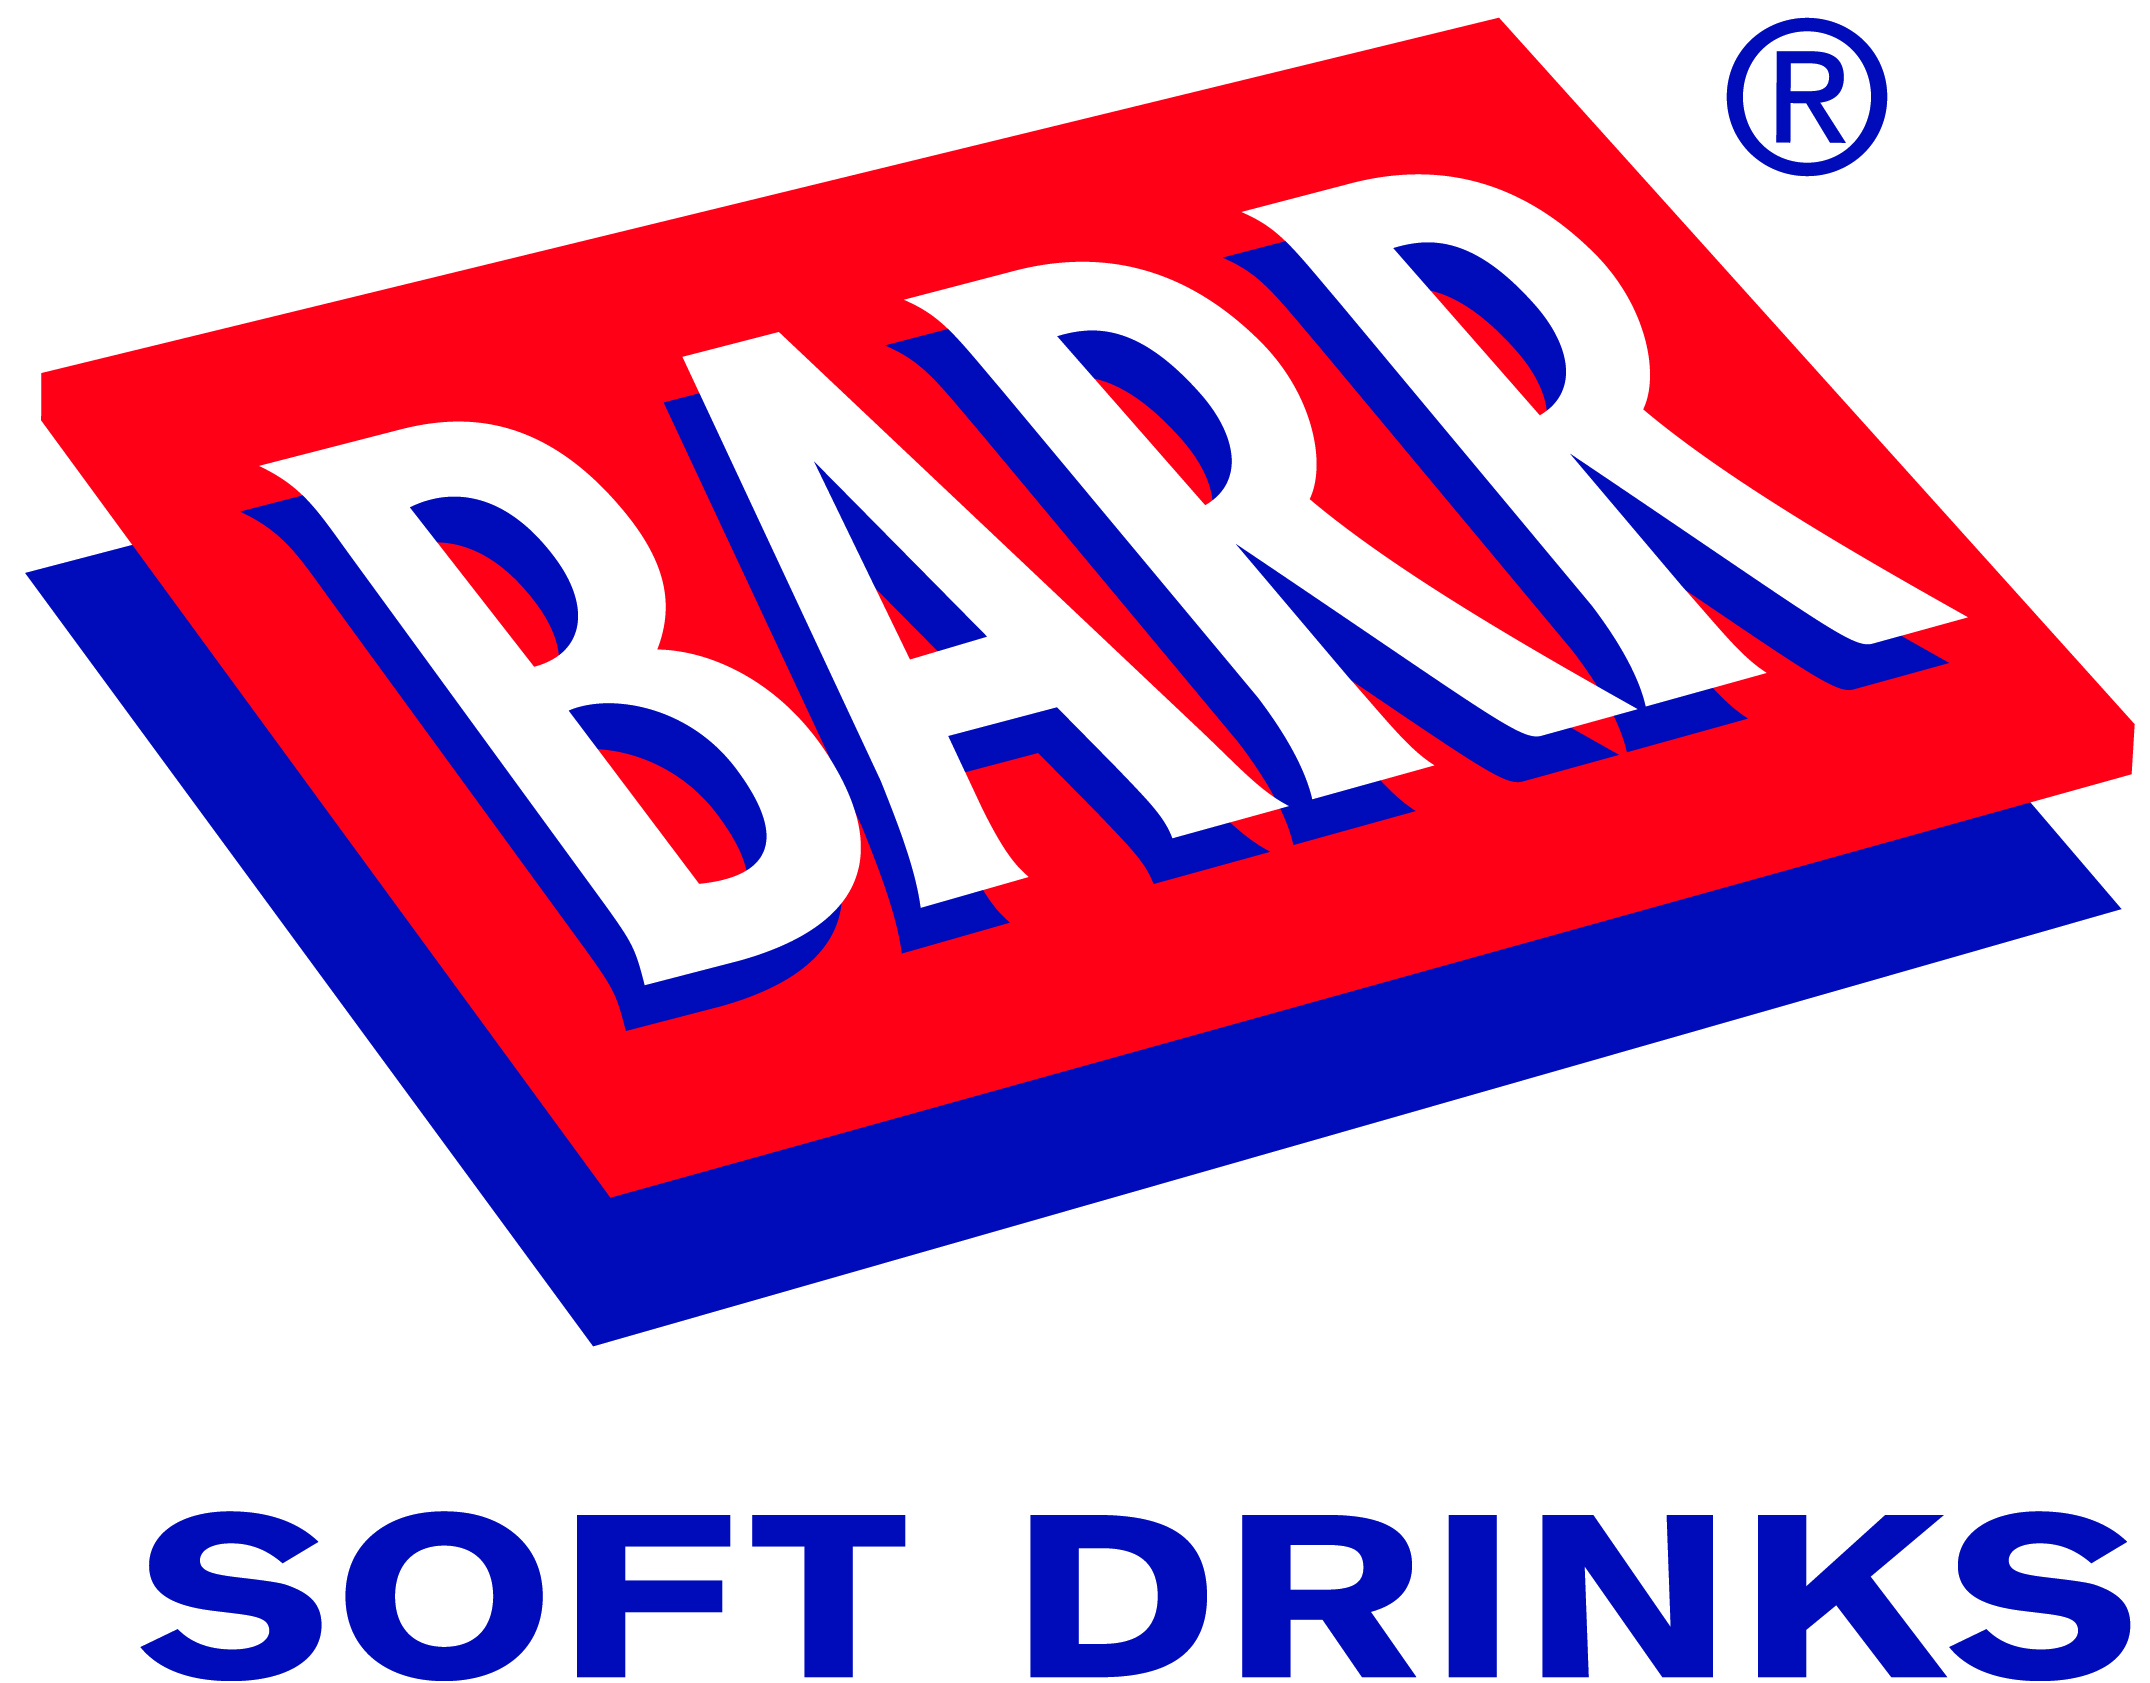 AG Barr Soft Drinks image.